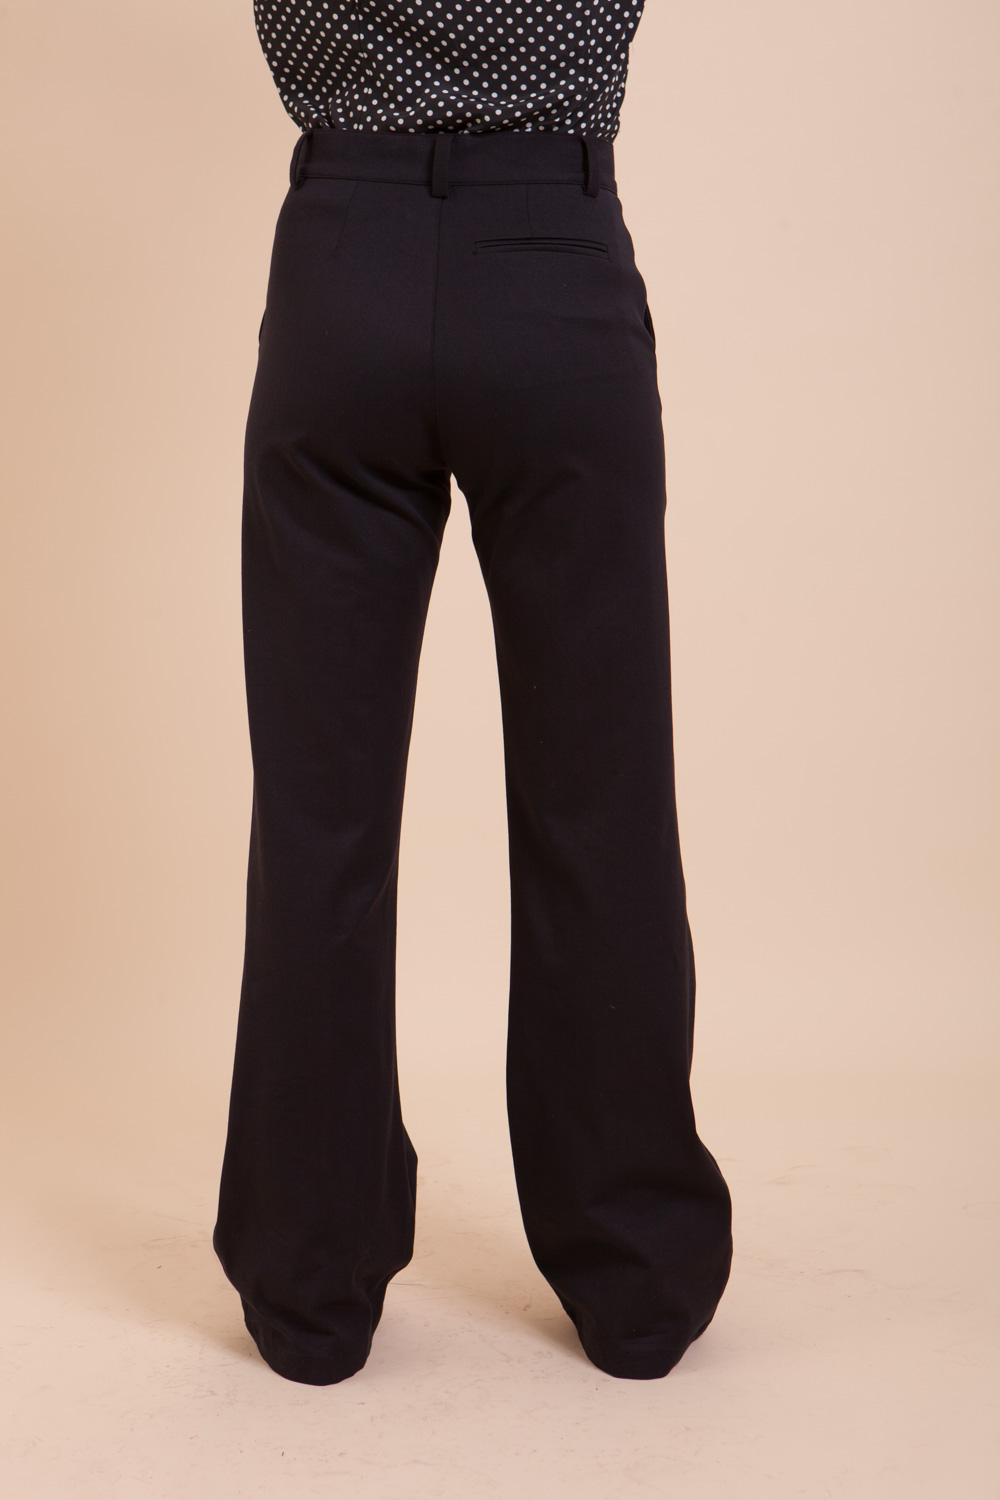 Jean noir pour femme, deux poches italiennes doublées et une poche au dos. idéal pour une garde robe décontractée. Made In France.